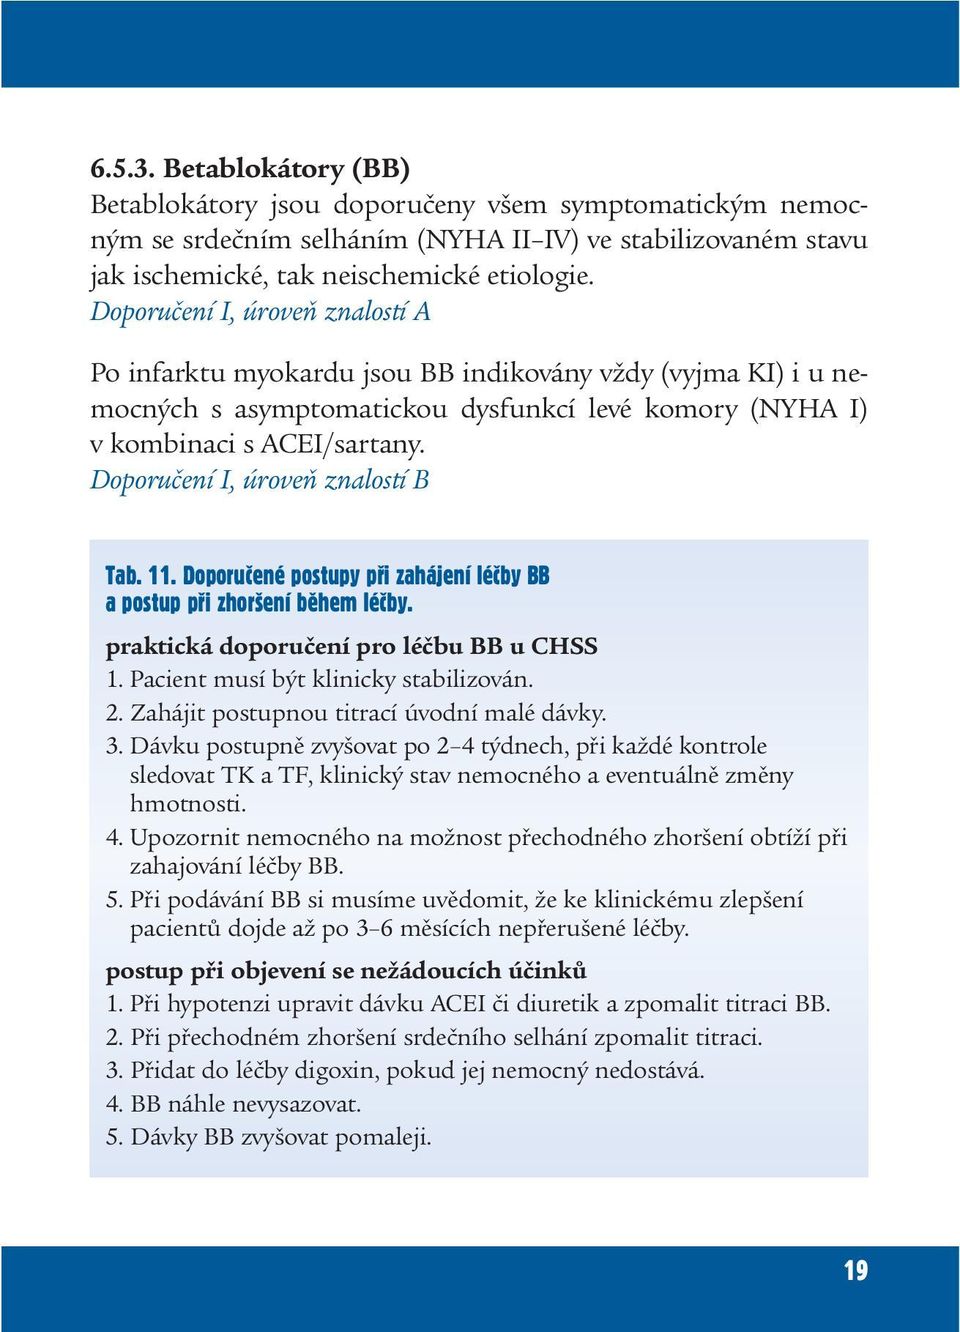 Doporučení I, úroveň znalostí B Tab. 11. Doporuèené postupy pøi zahájení léèby BB a postup pøi zhoršení bìhem léèby. praktická doporučení pro léčbu BB u CHSS 1. Pacient musí být klinicky stabilizován.